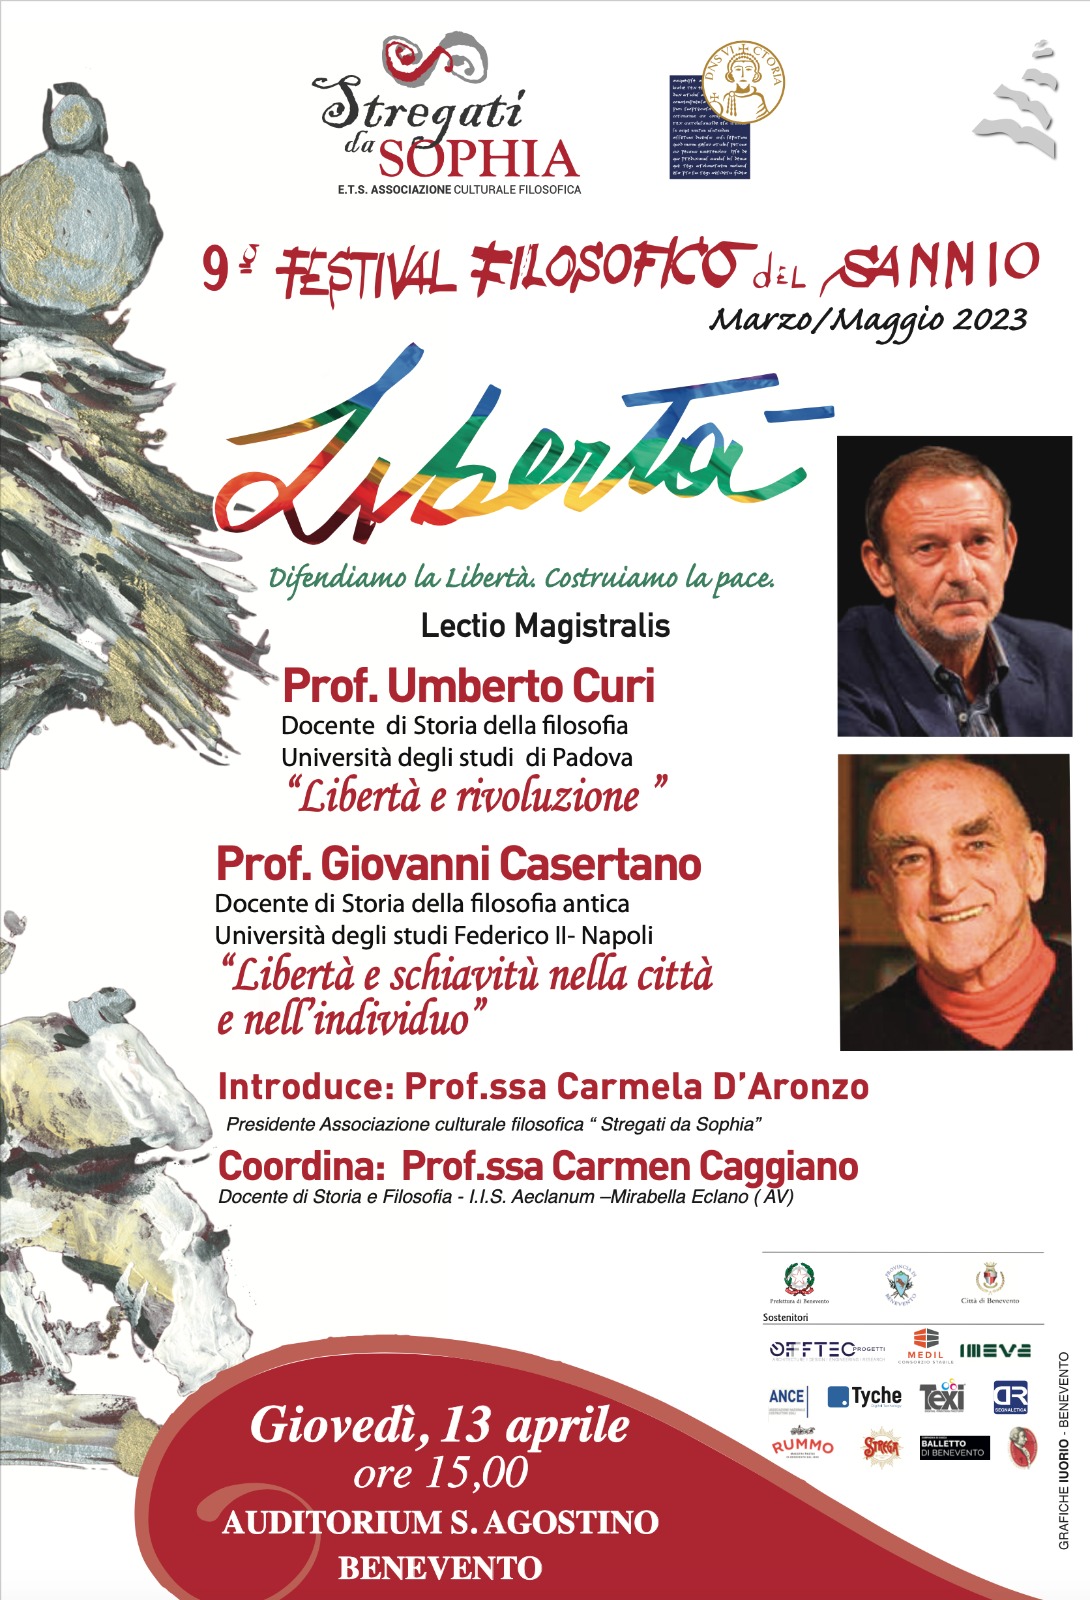 Festival Filosofico del Sannio. “Libertà e liberazione “ è il tema affidato al Prof. Umberto Curi